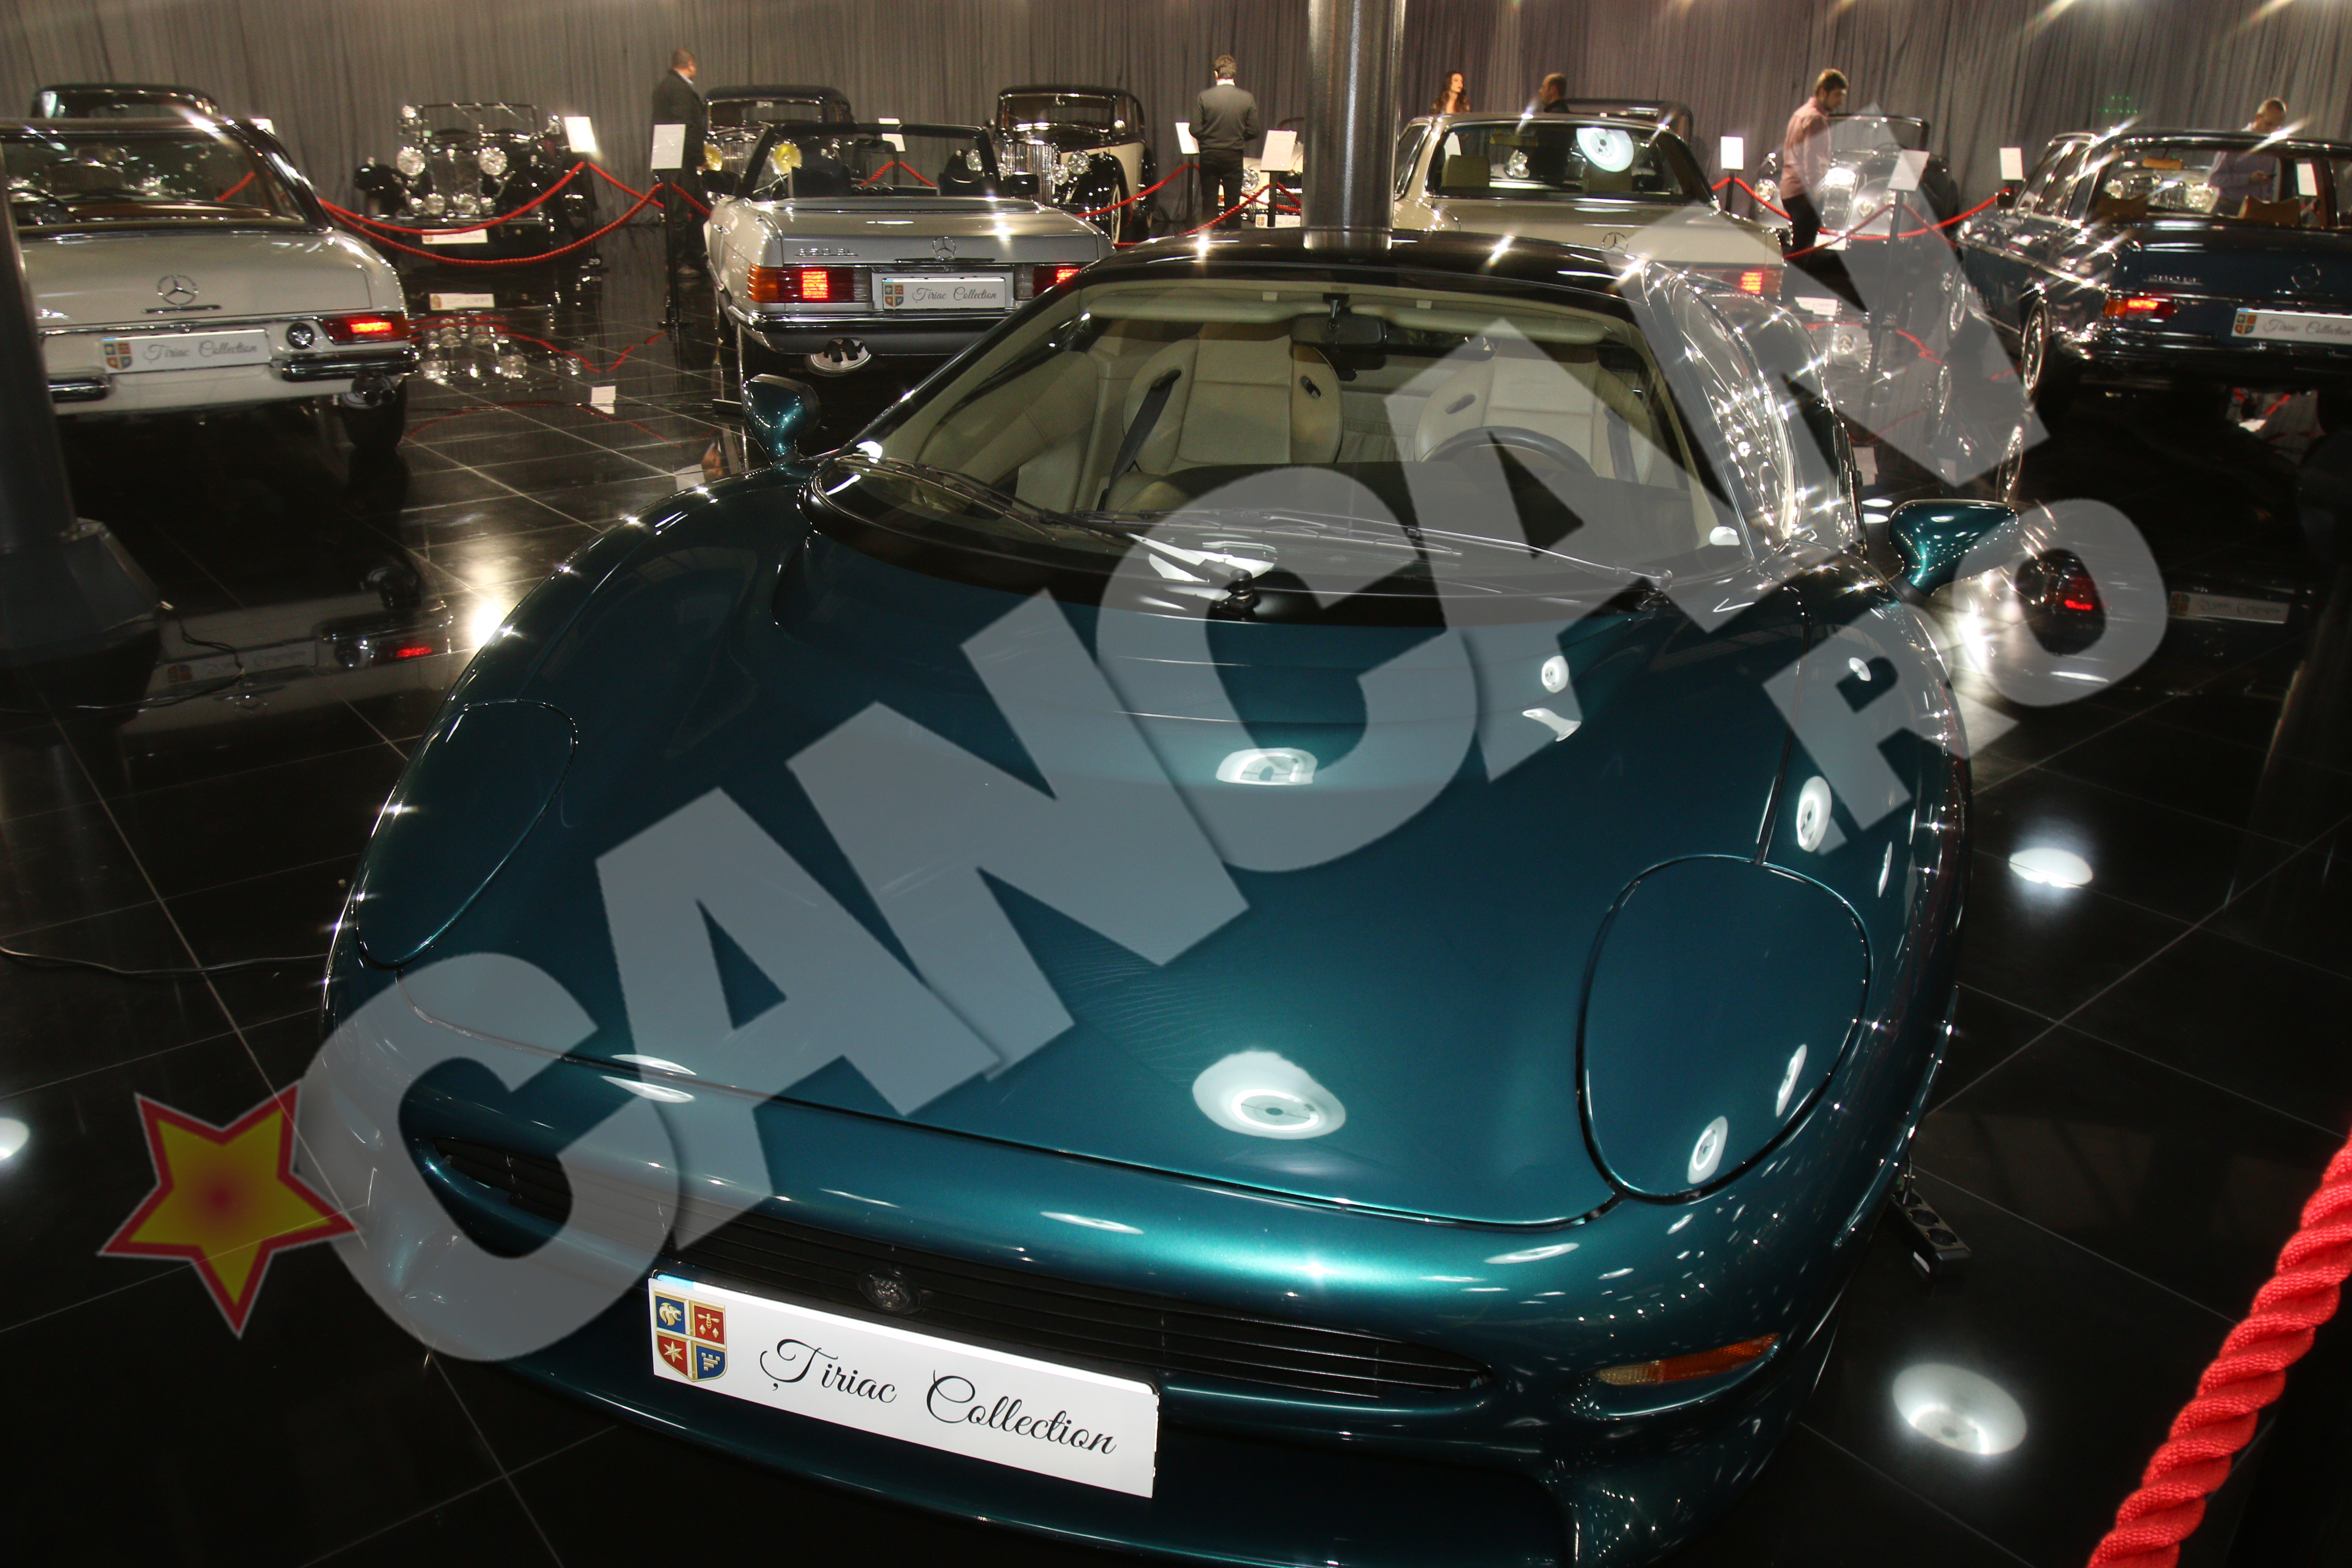 Acest model de Jaguar este una dintre cele mai rapide masini de serie, din vremea ei. Un model asemanator detine si Elton John